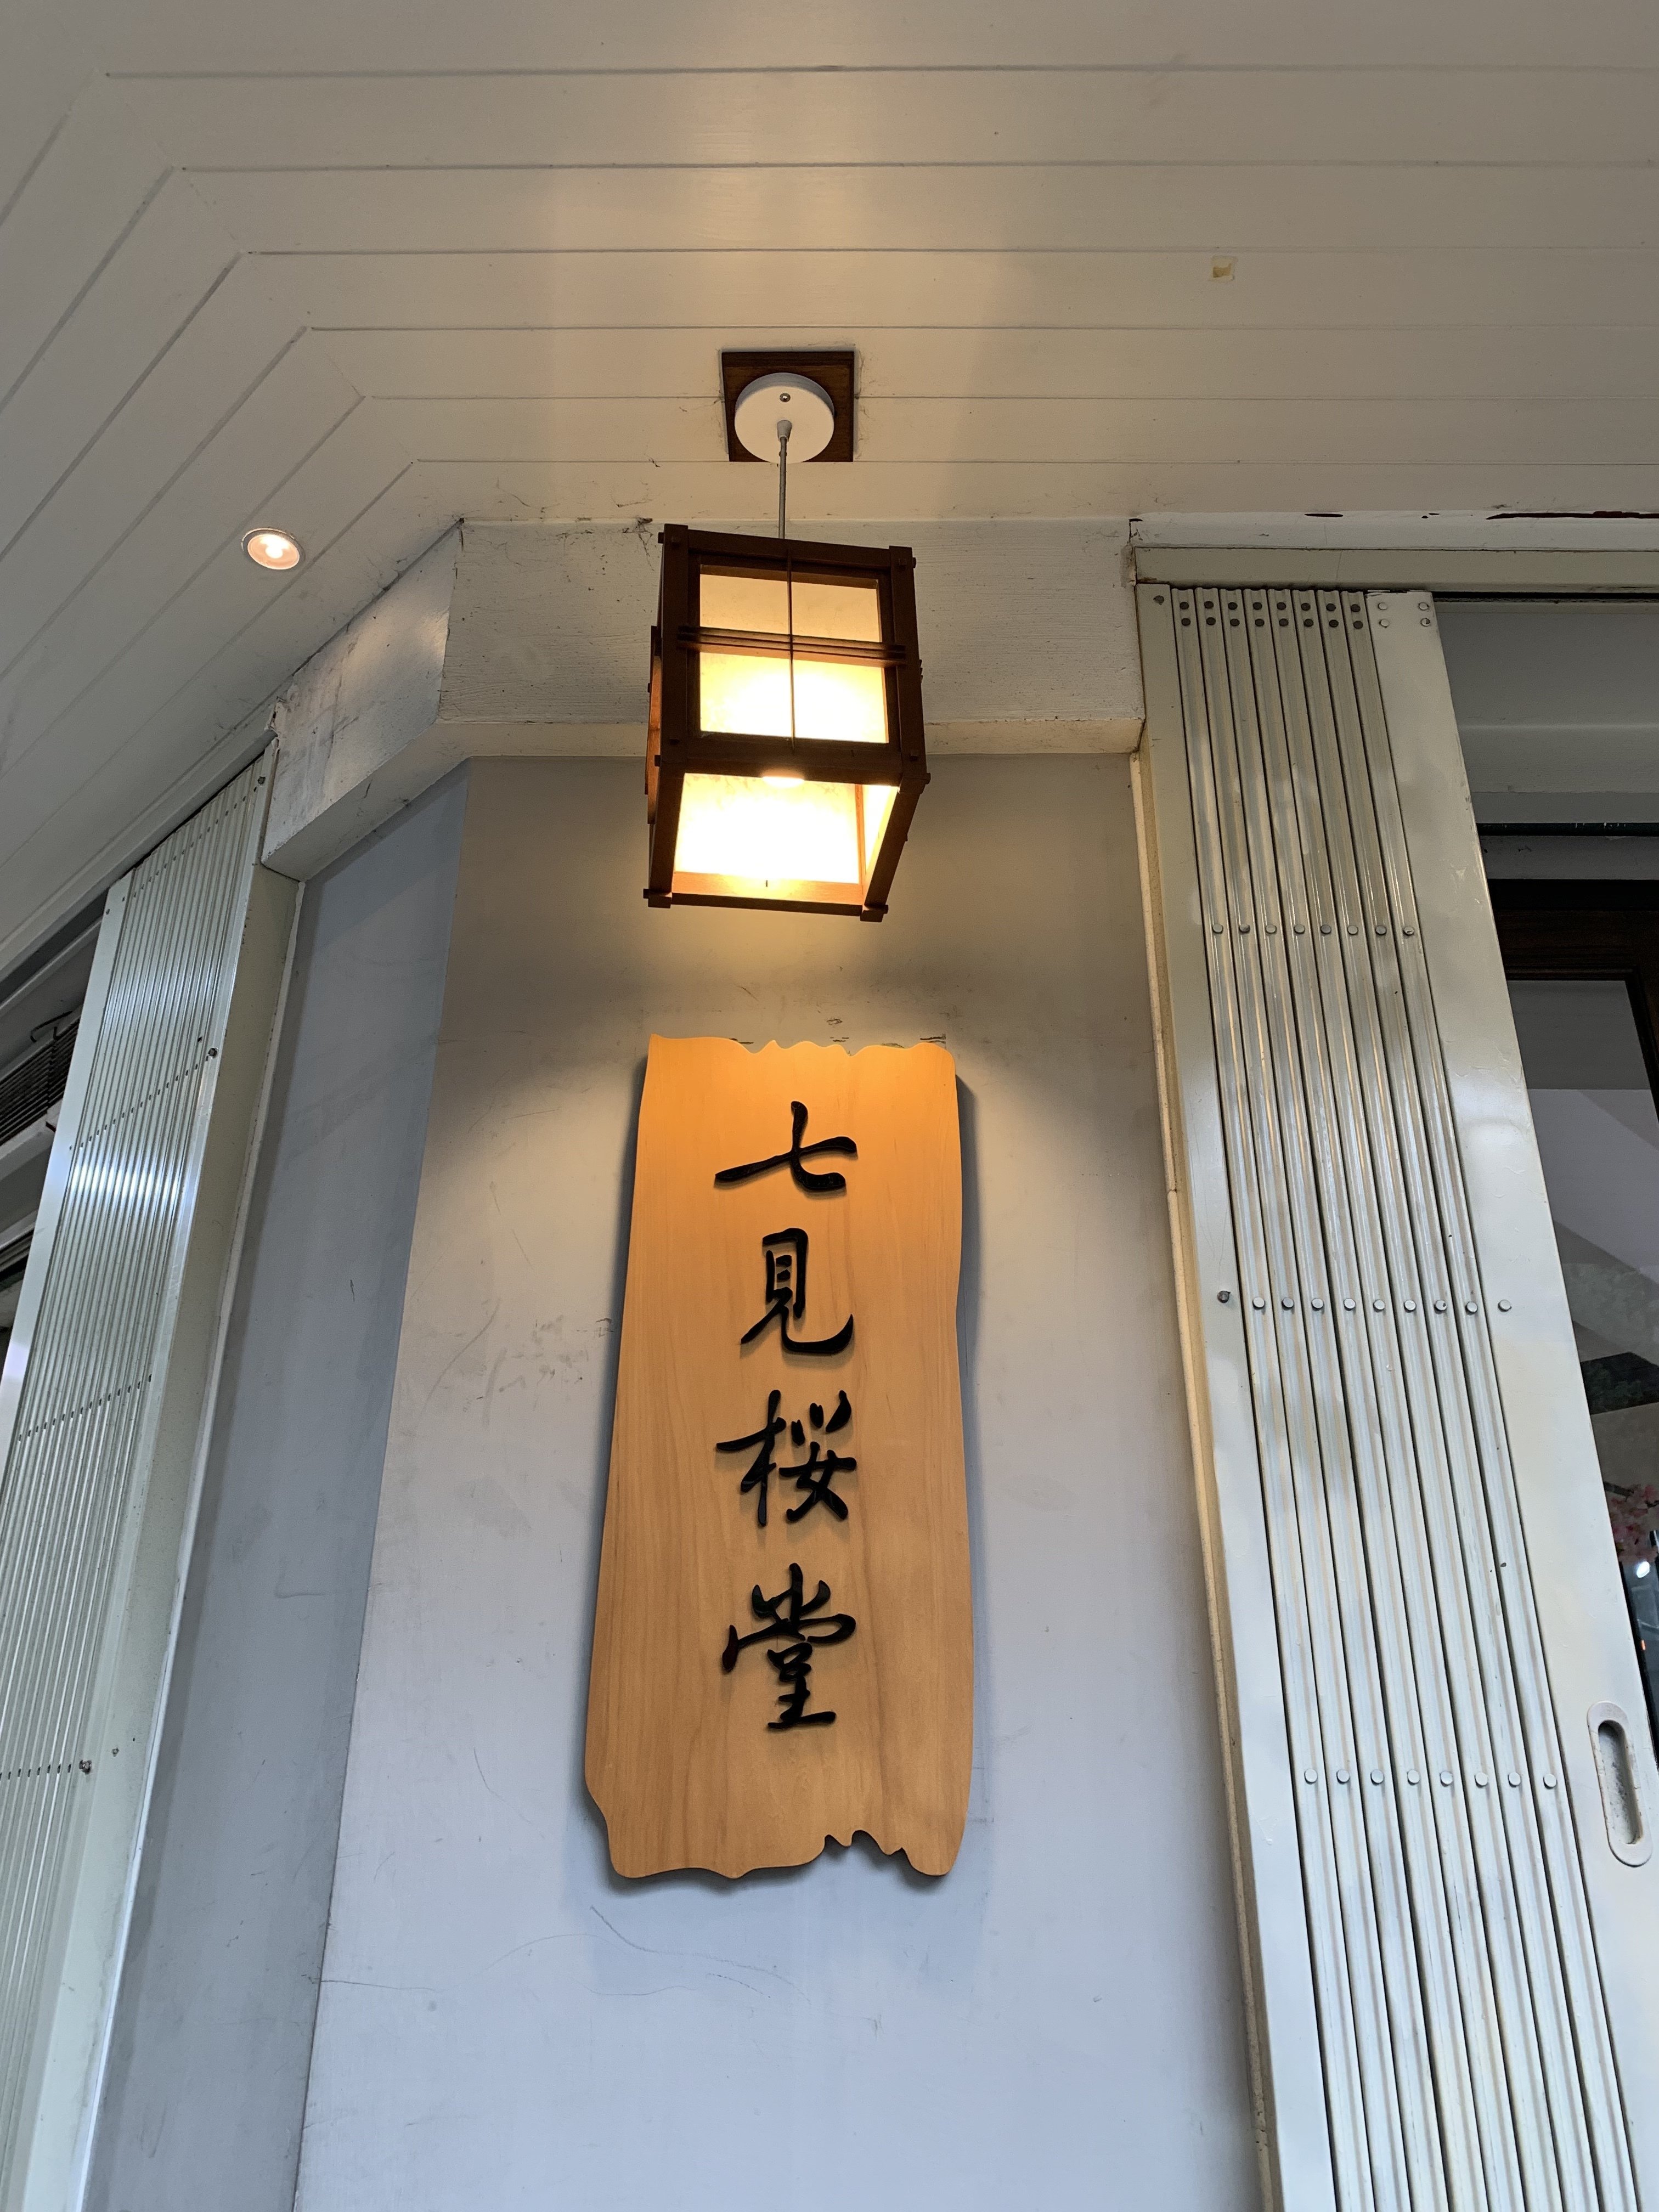 七見櫻堂連門牌也是很日式的手寫木牌子